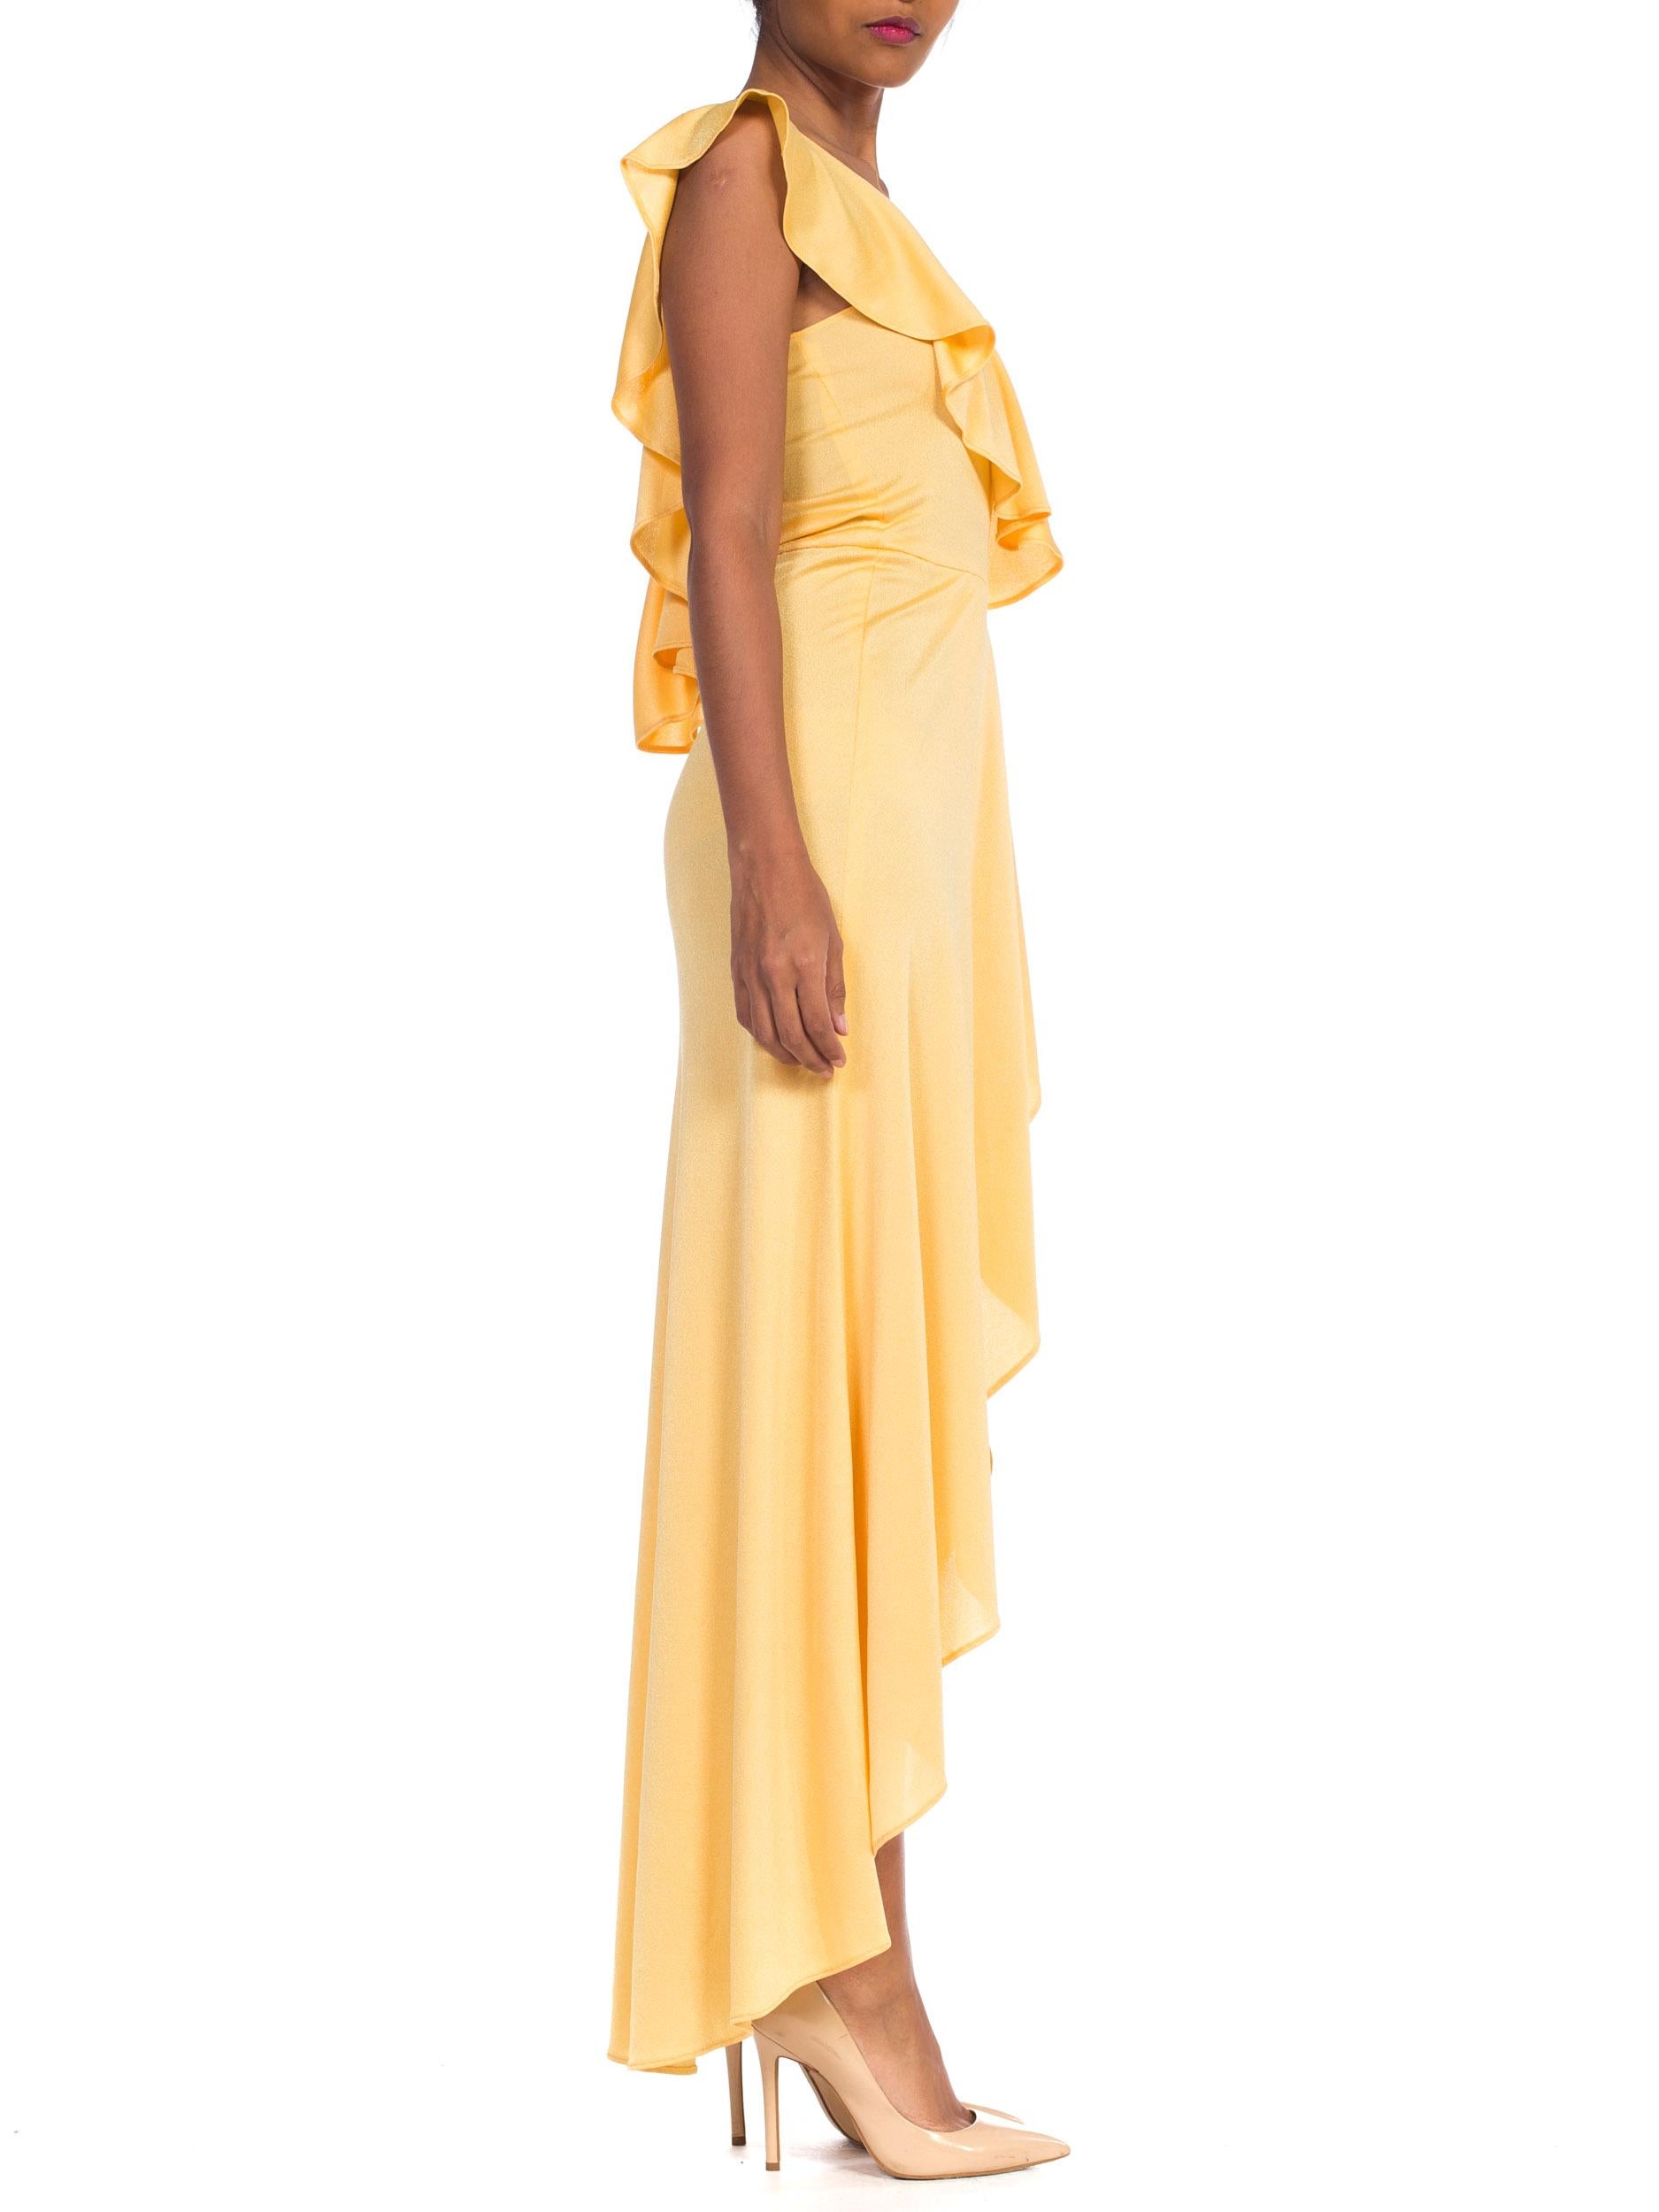 Women's 1970s Slinky One Shoulder Yellow Jersey Dress